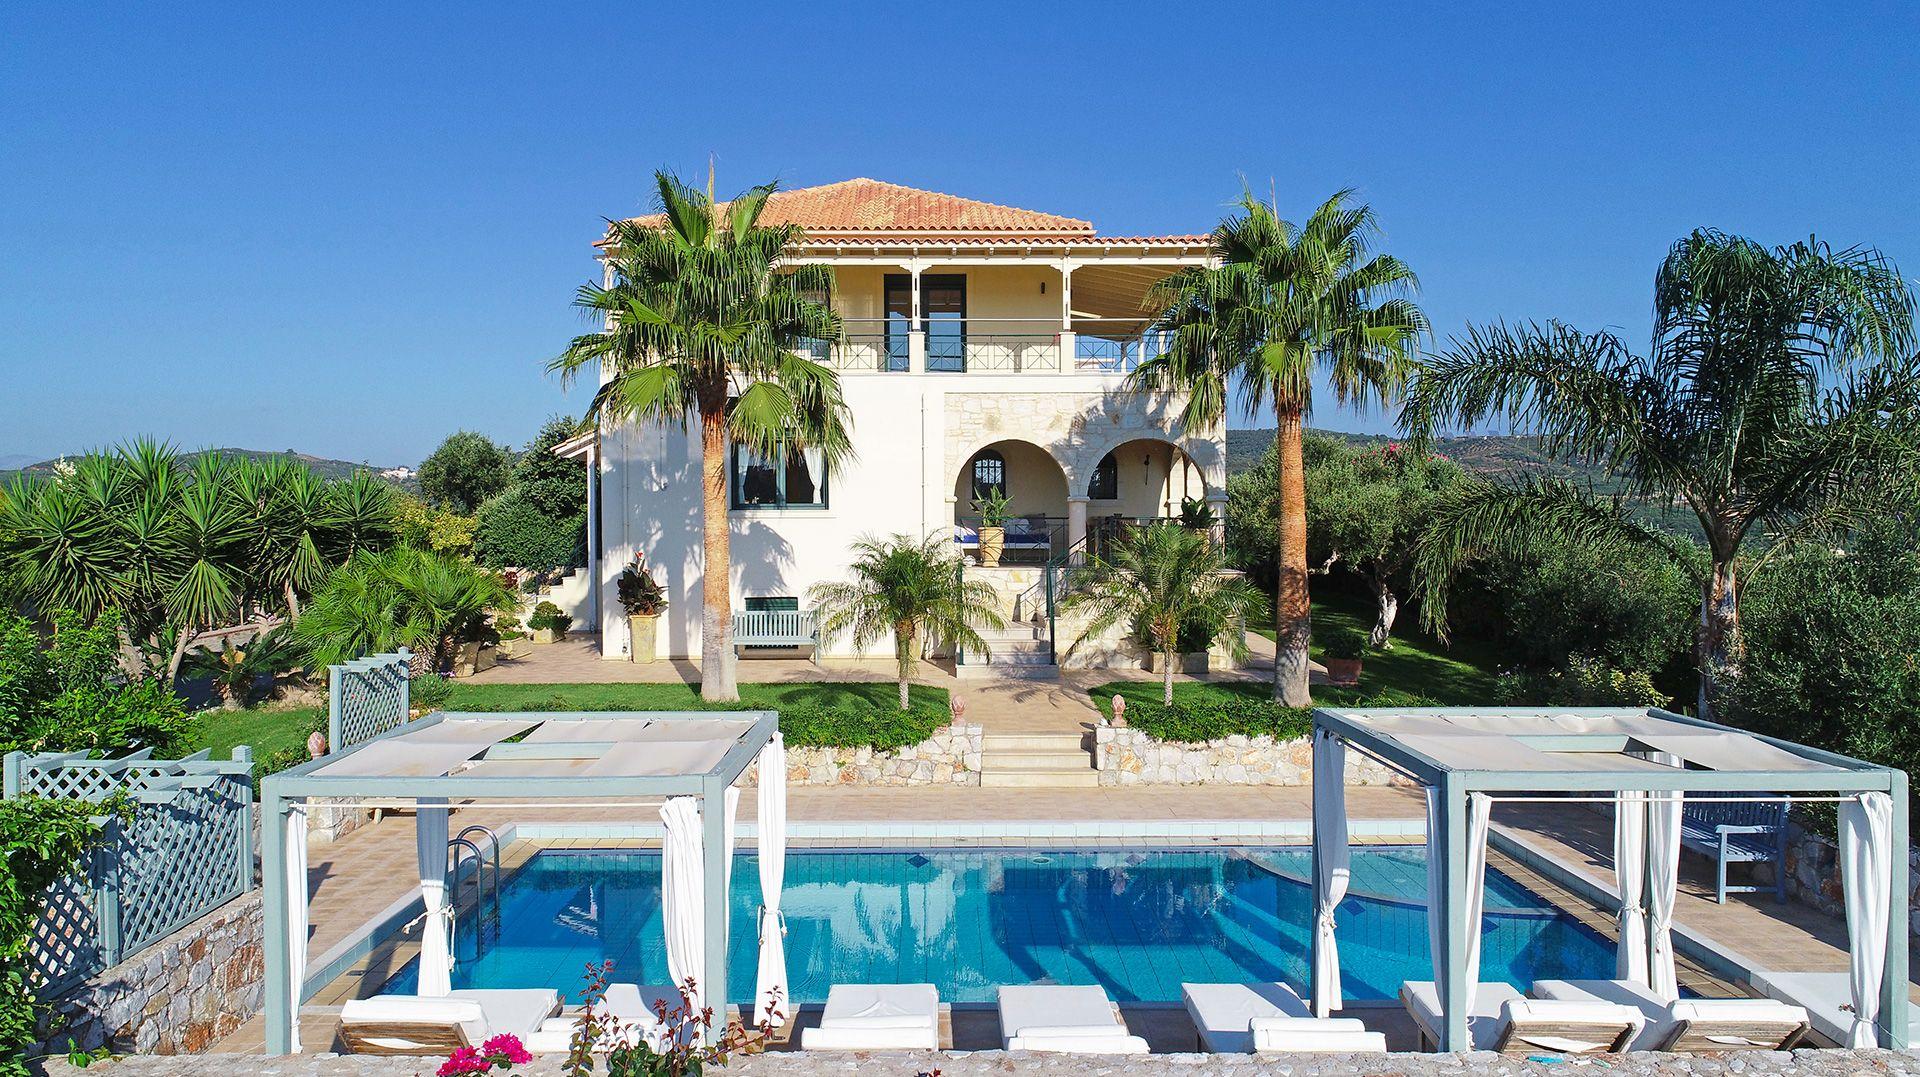 Luxuriöses Ferienhaus mit Pool und Meerblick  Ferienhaus in Griechenland